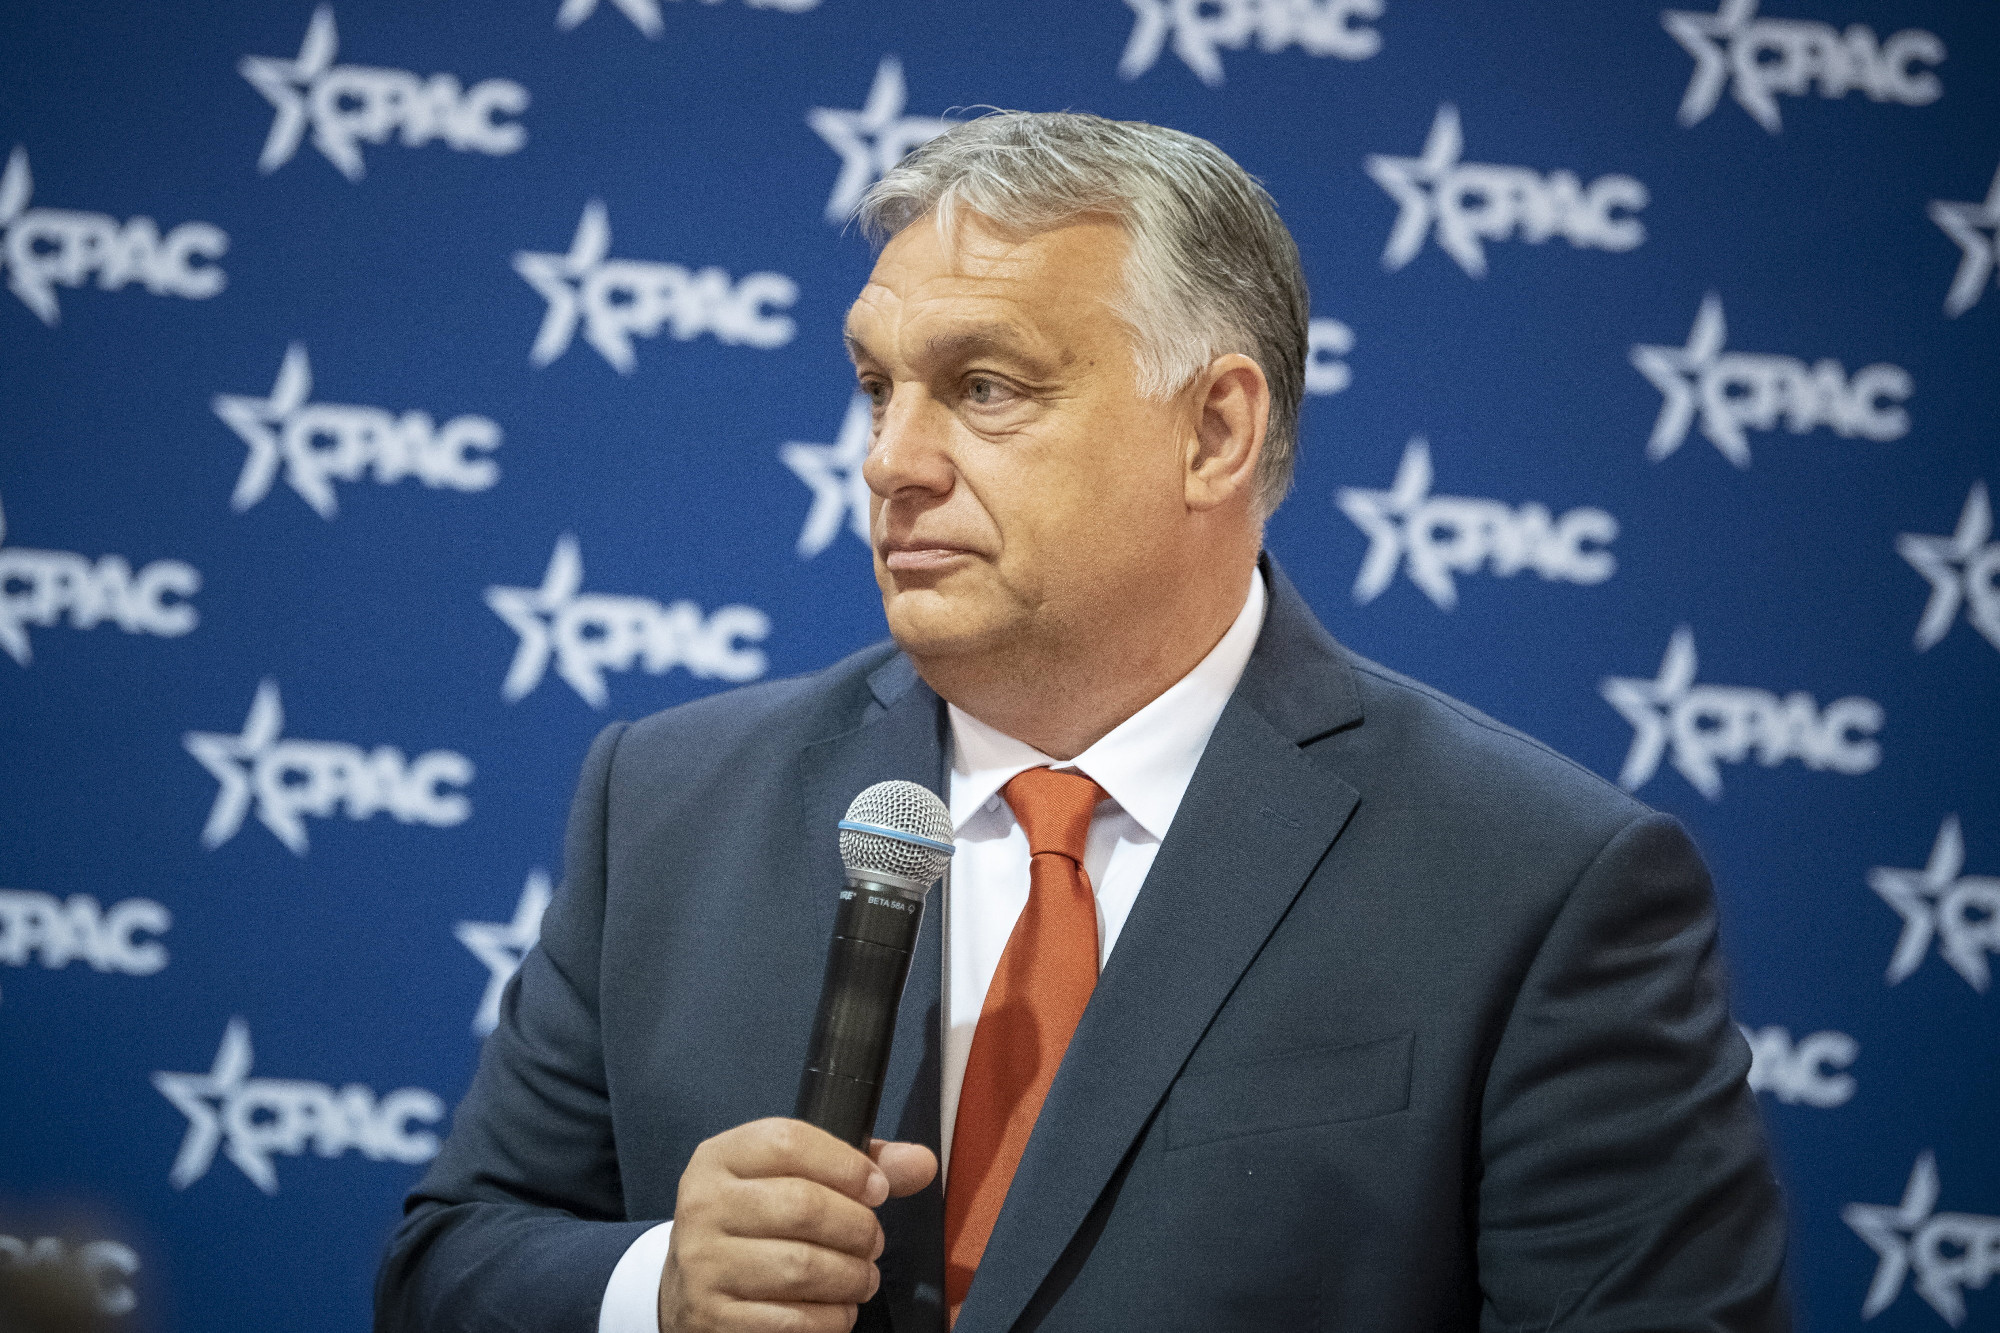 CPAC: Nem kértek és nem fogadtak el pénzt, hogy Orbán beszédet tarthasson